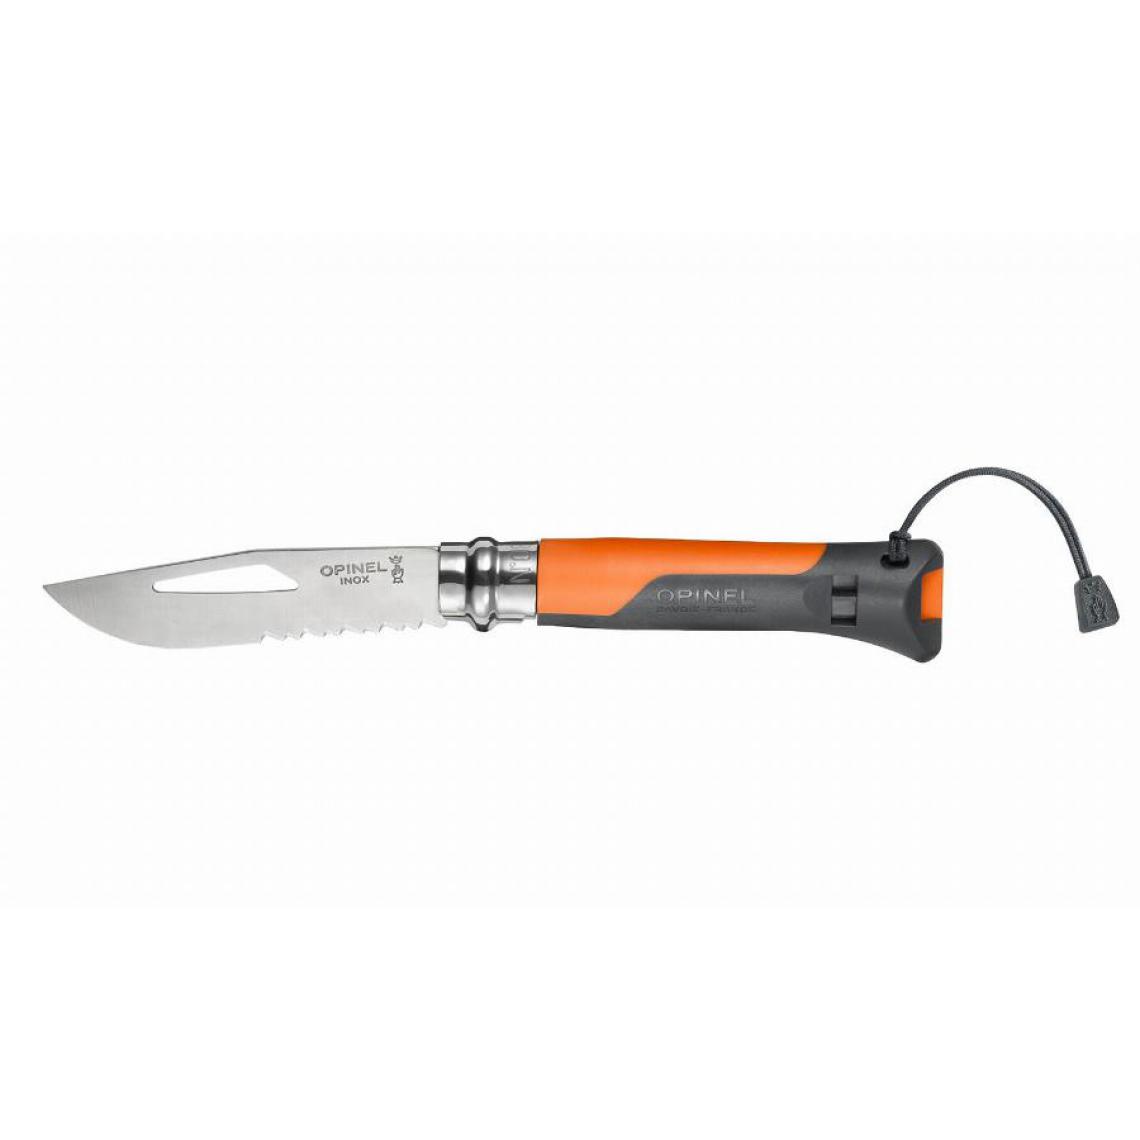 Opinel - Couteau n°8 Outdoor OPINEL lame Inox bague de sécurité - Orange - 1577 - Outils de coupe